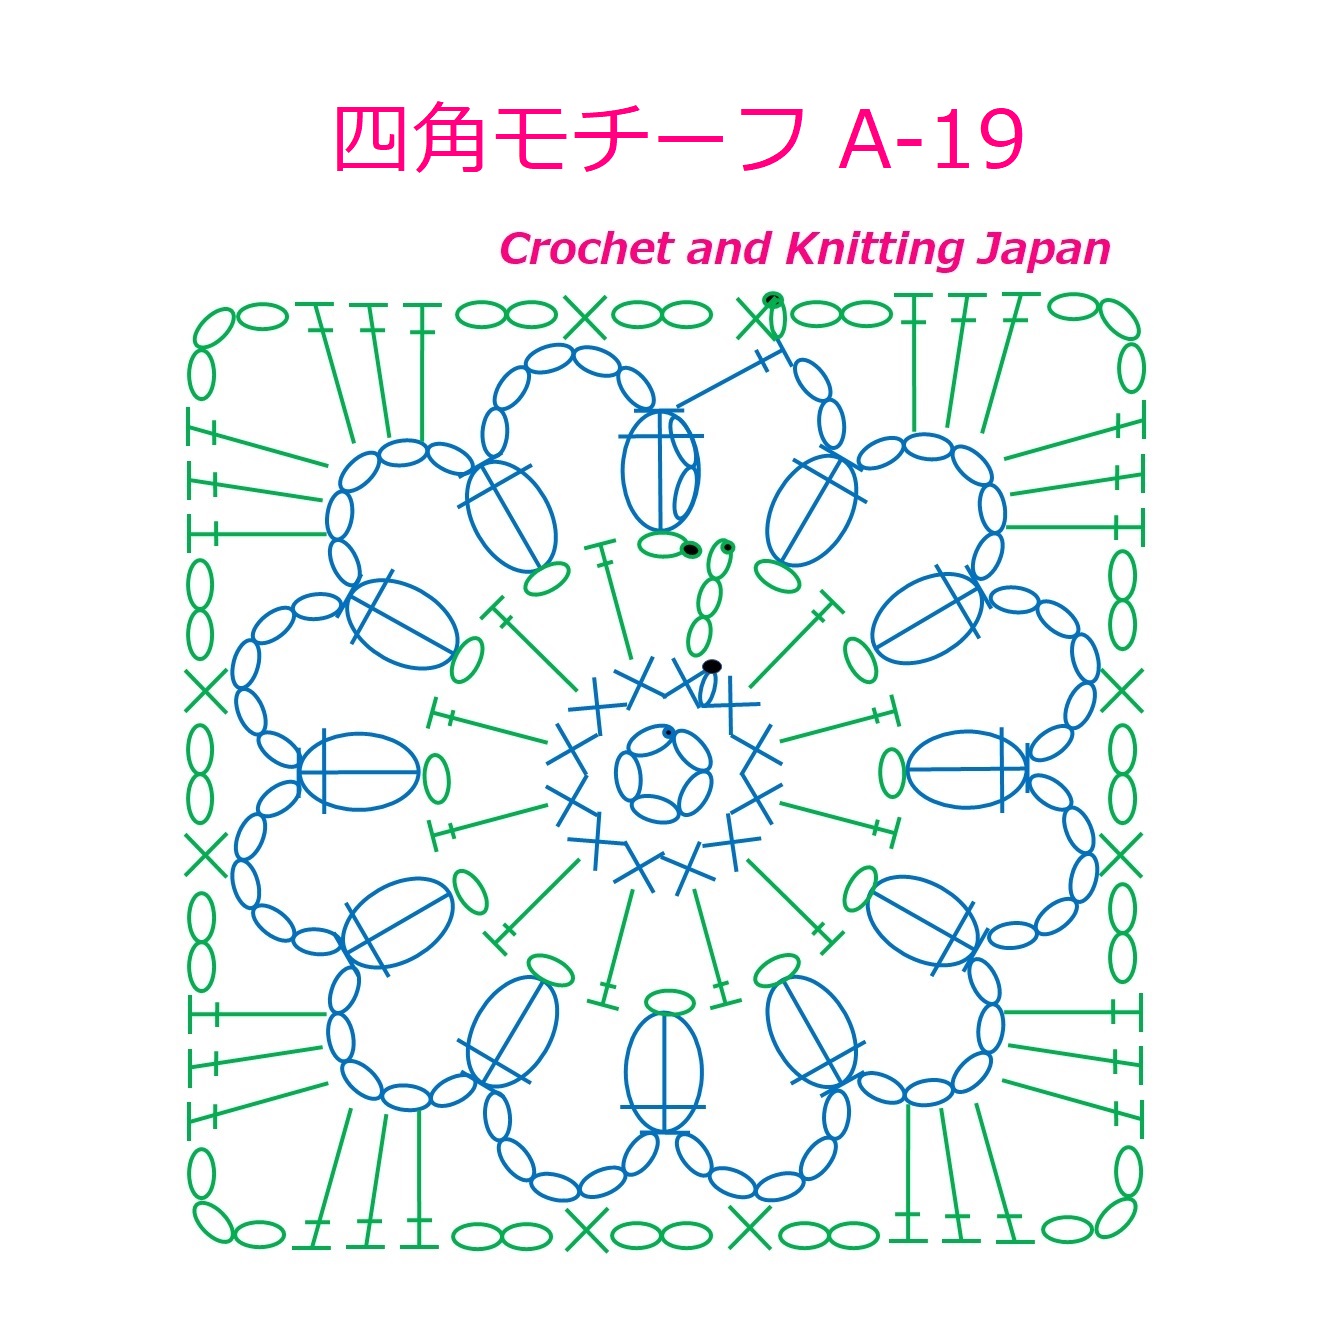 かぎ編み Crochet Japan クロッシェジャパン かぎ針編み 四角モチーフの編み方 A 19 Crochet Square Motif 編み図 字幕解説 Crochet And Knitting Japan